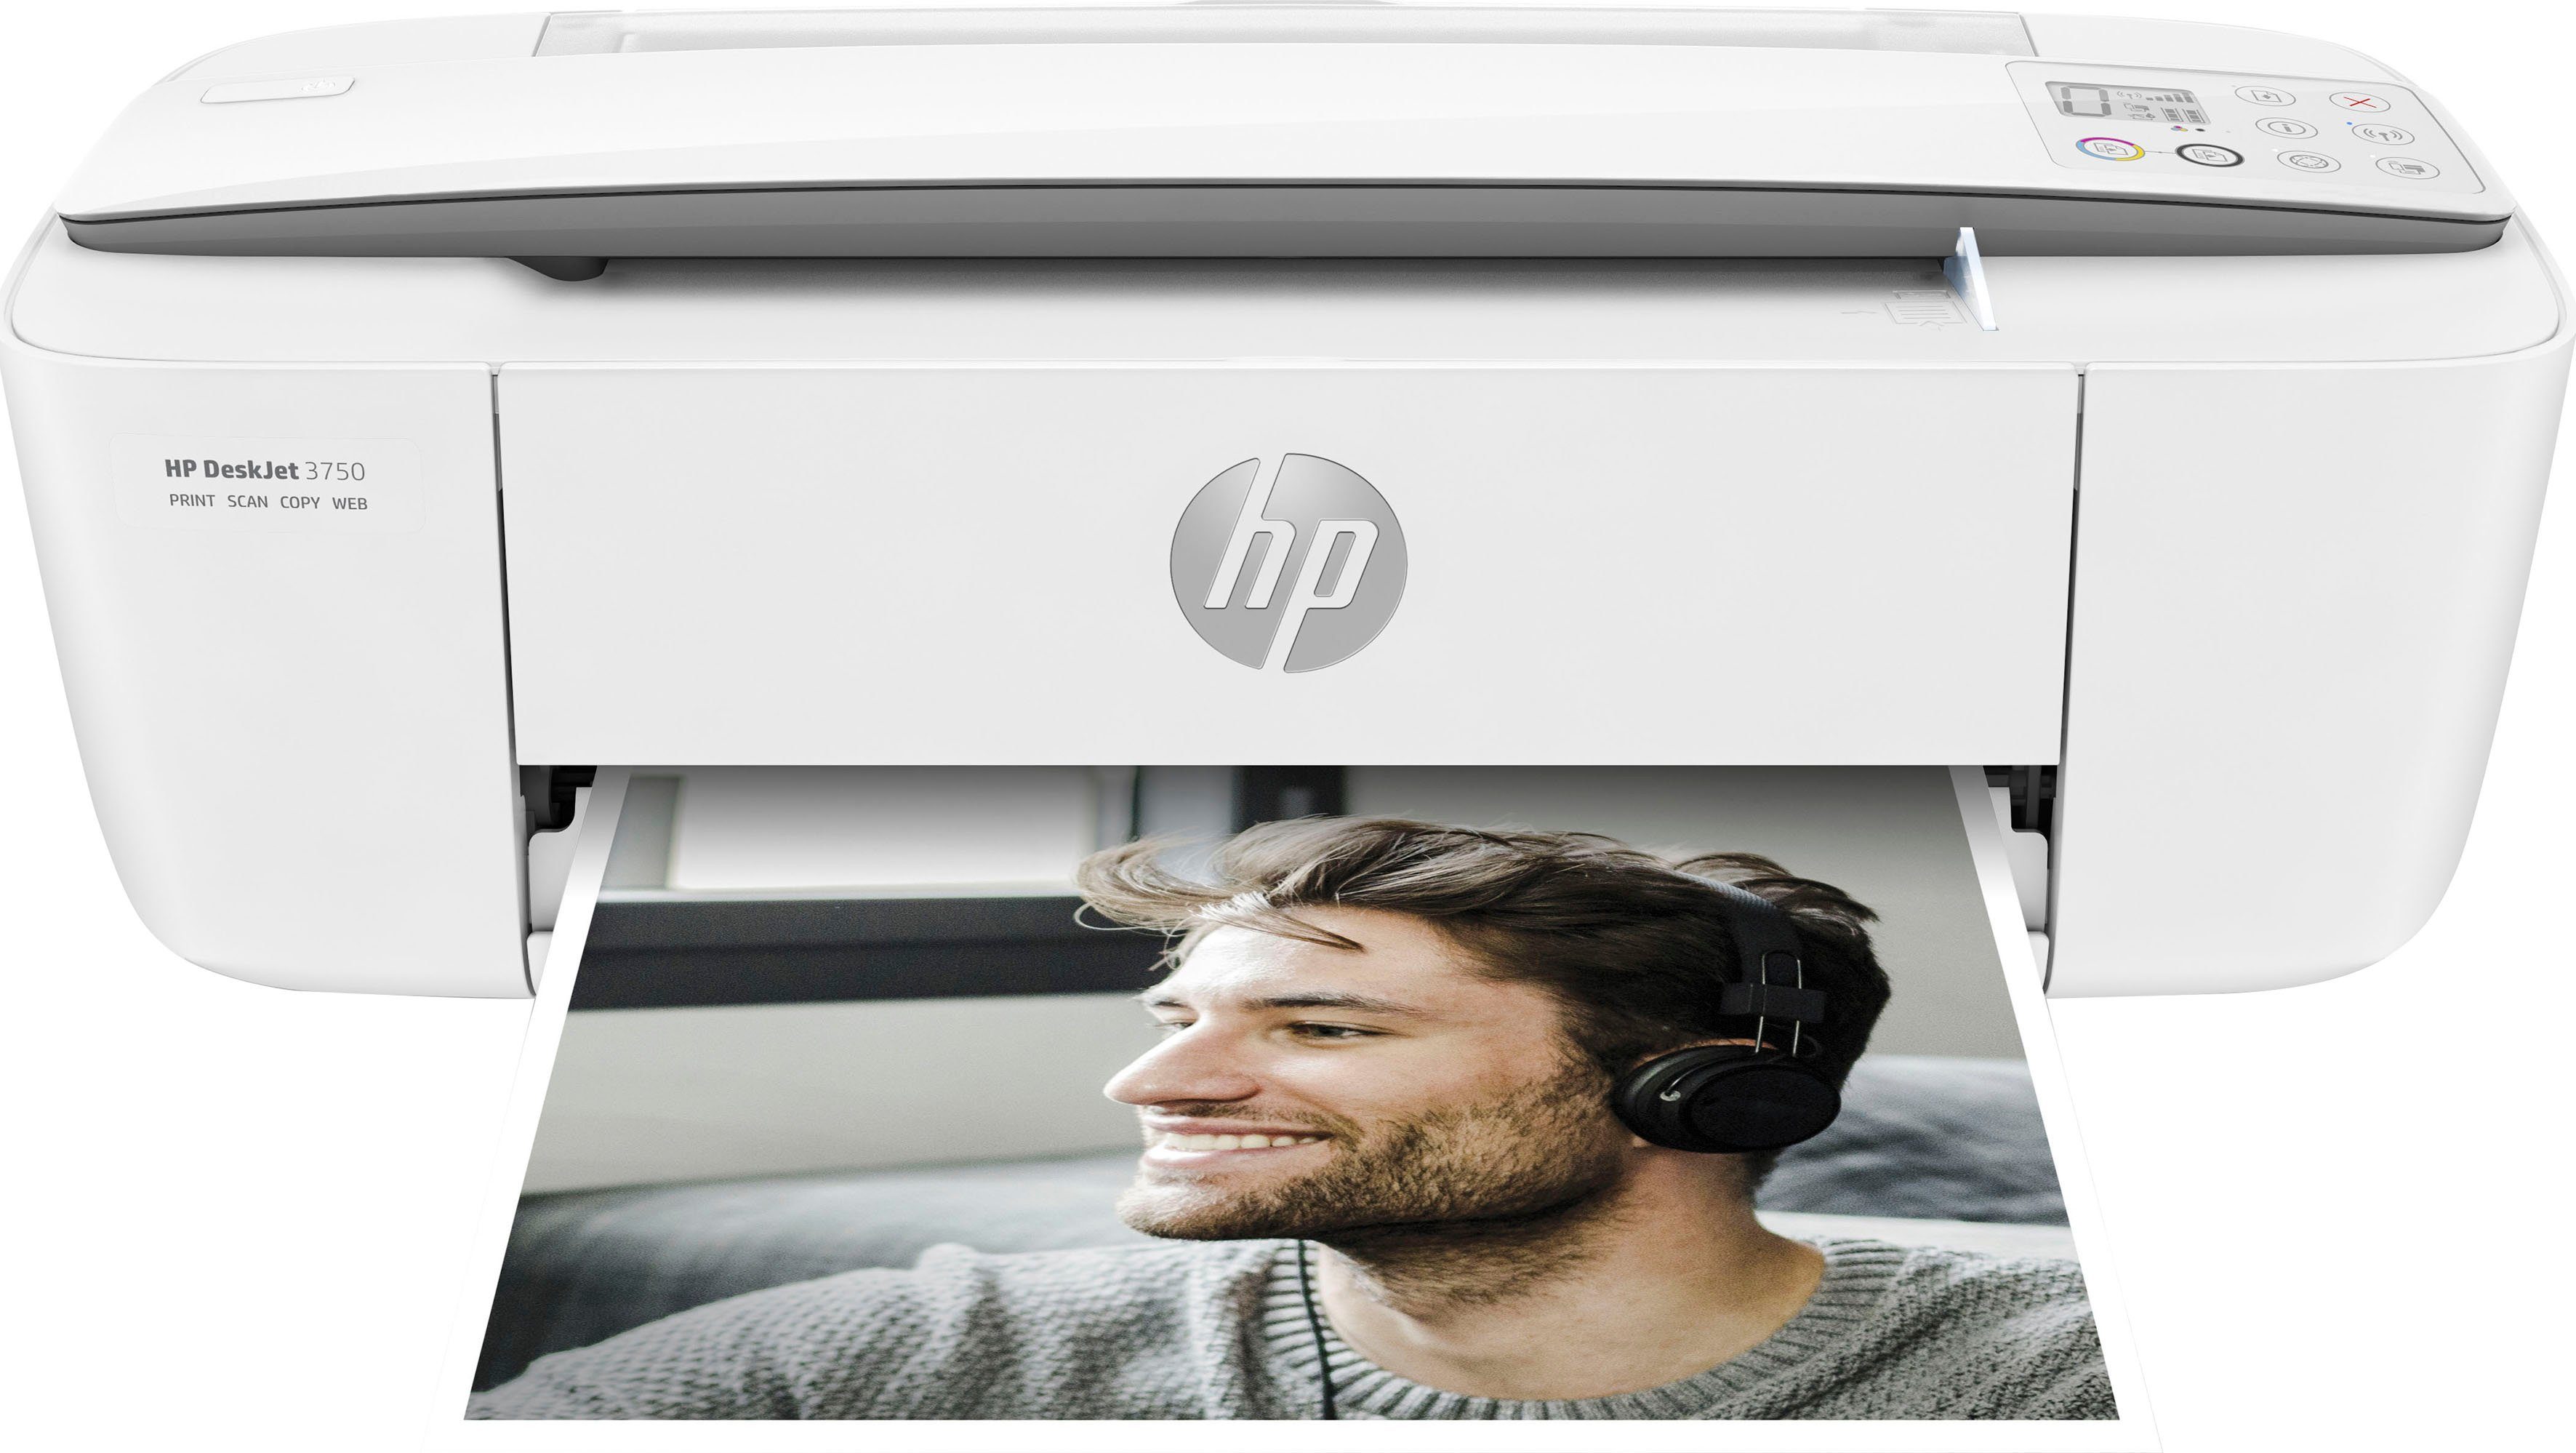 (WLAN HP DeskJet (Wi-Fi), 3750 Ink kompatibel) Multifunktionsdrucker, Drucker HP+ Instant